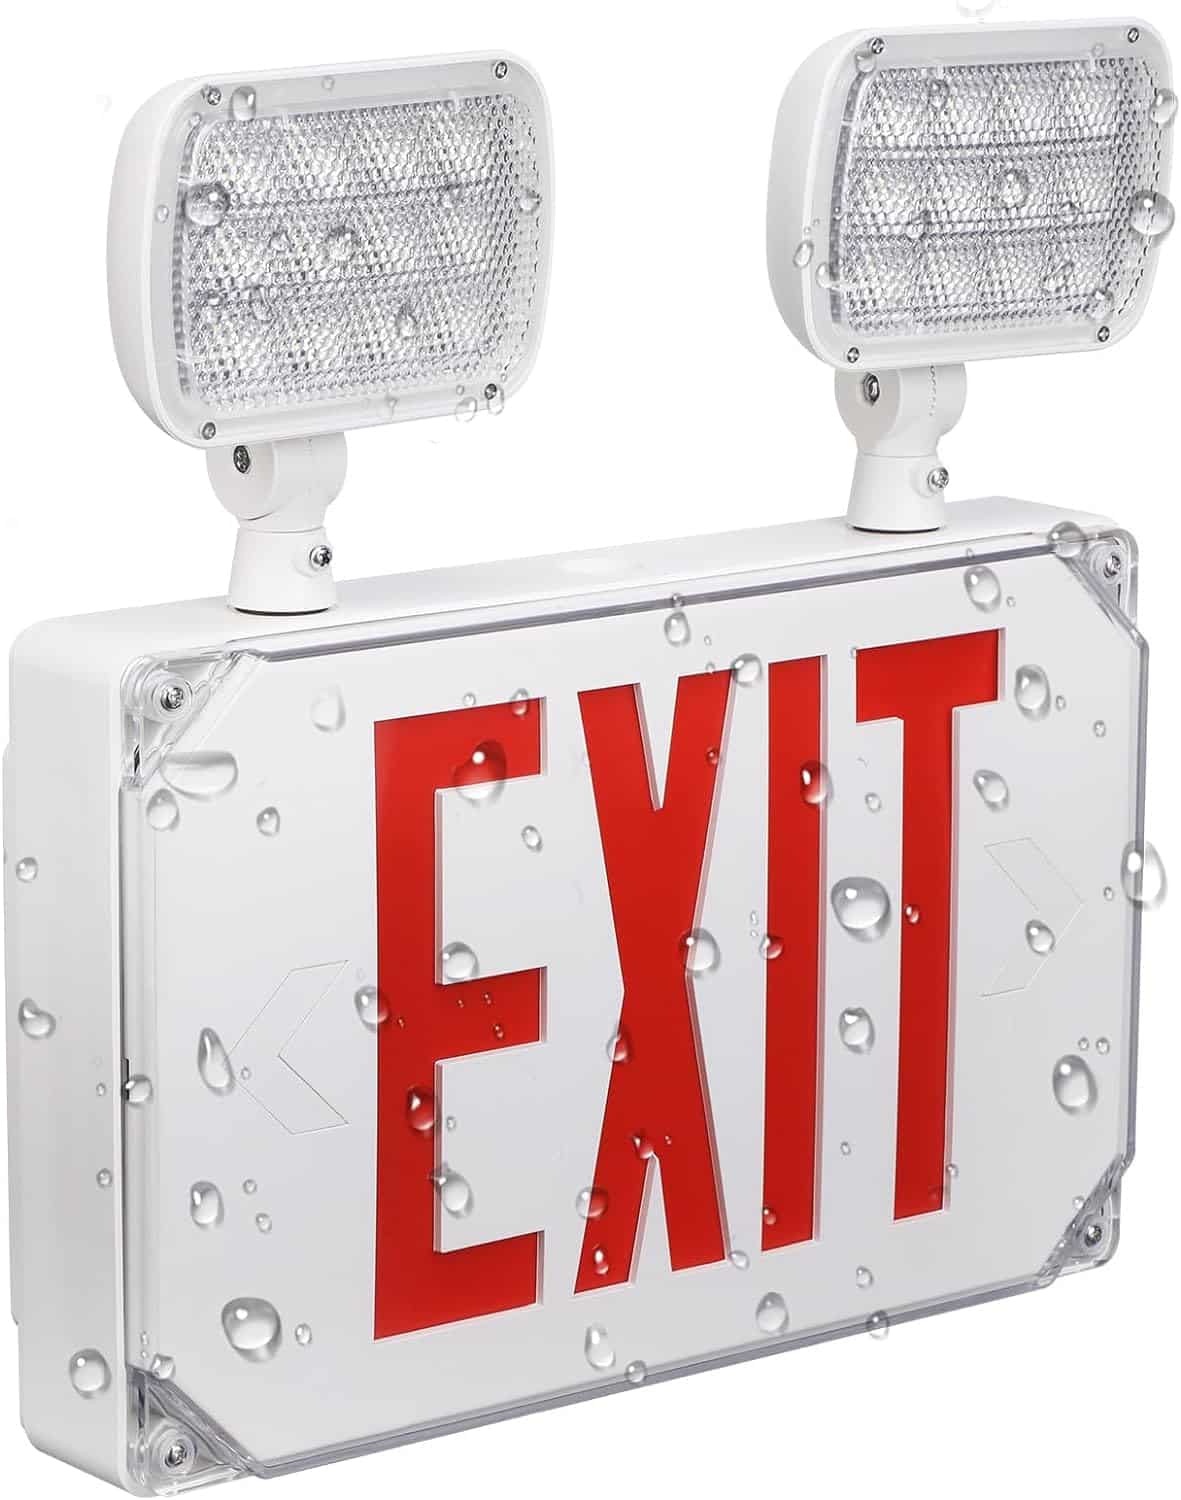 LEONLITE LED Exit Light Review